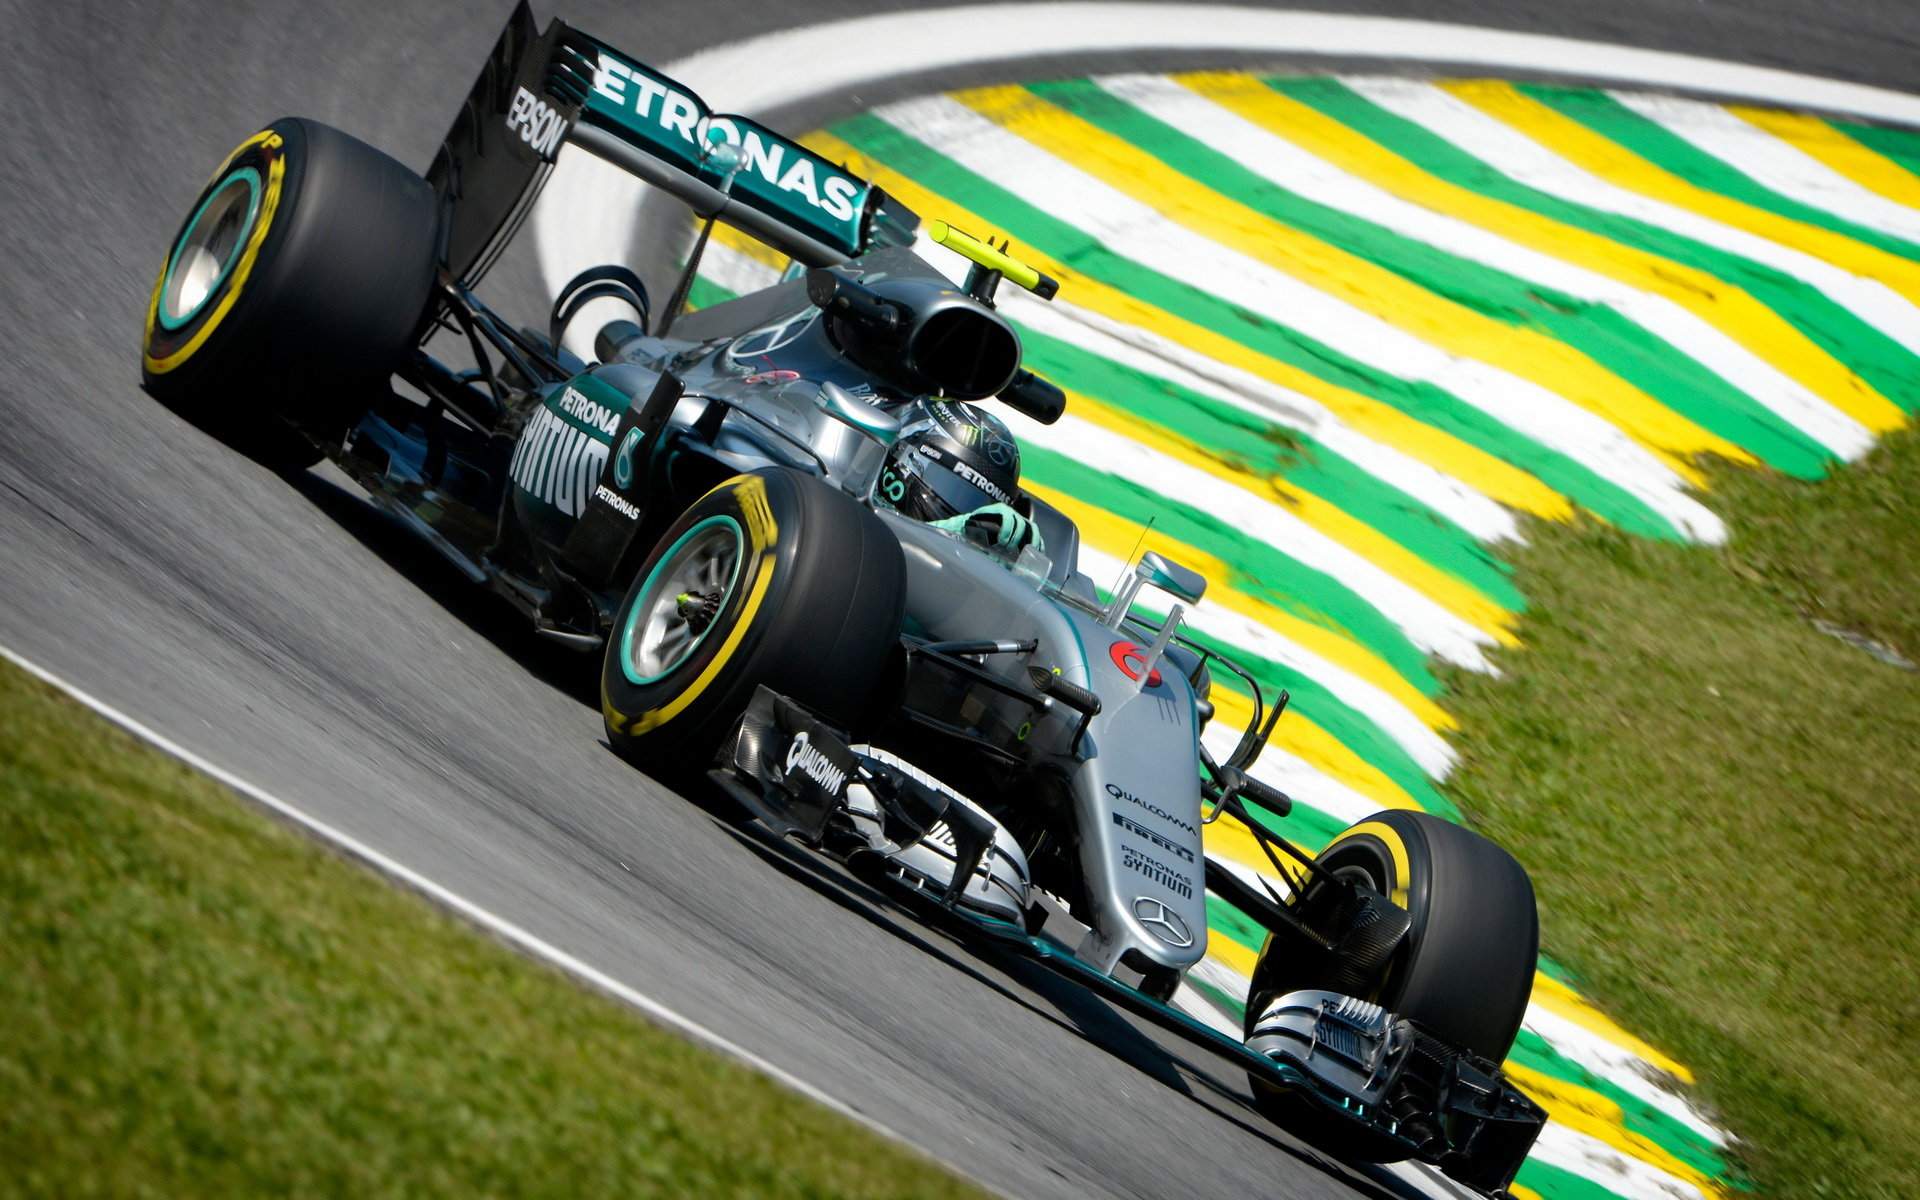 Nico Rosberg v kvalifikaci v Brazílii